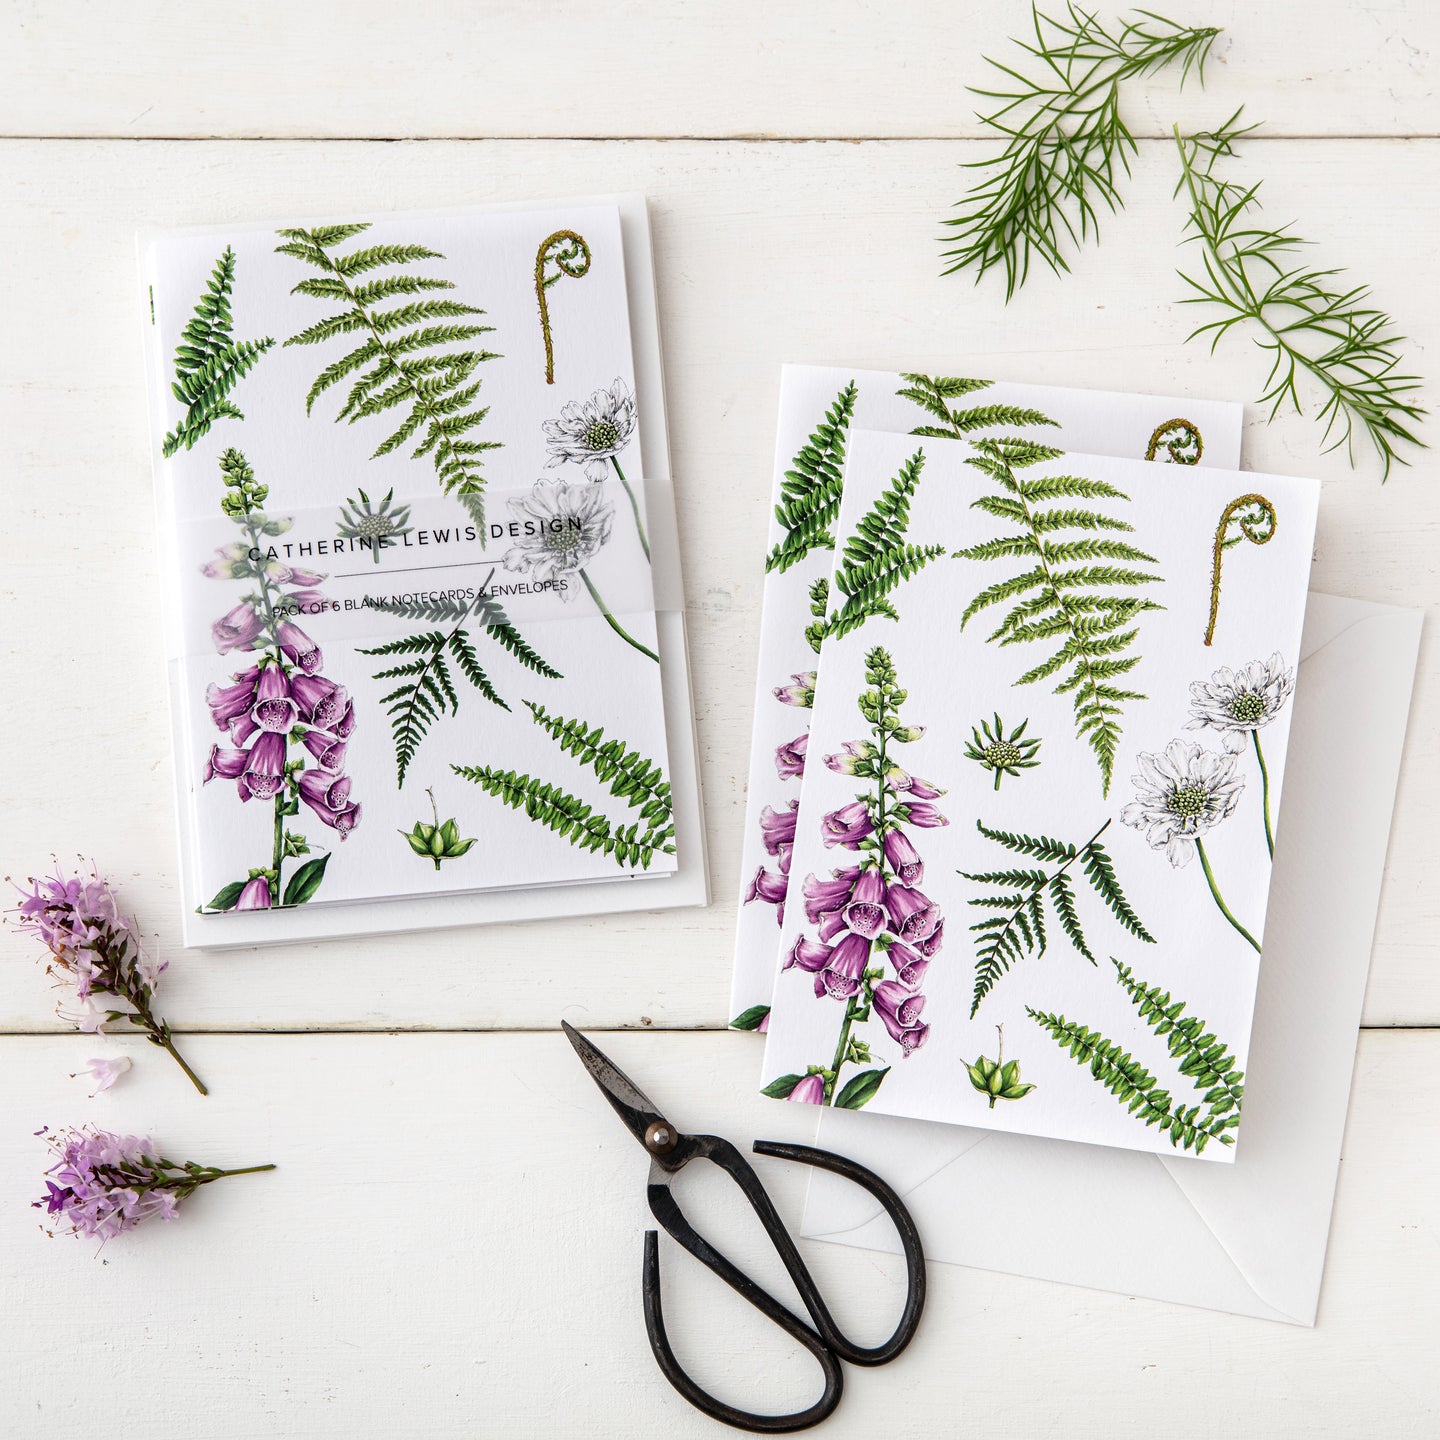 Summer Garden - Pack of 6 Blank Cards - White